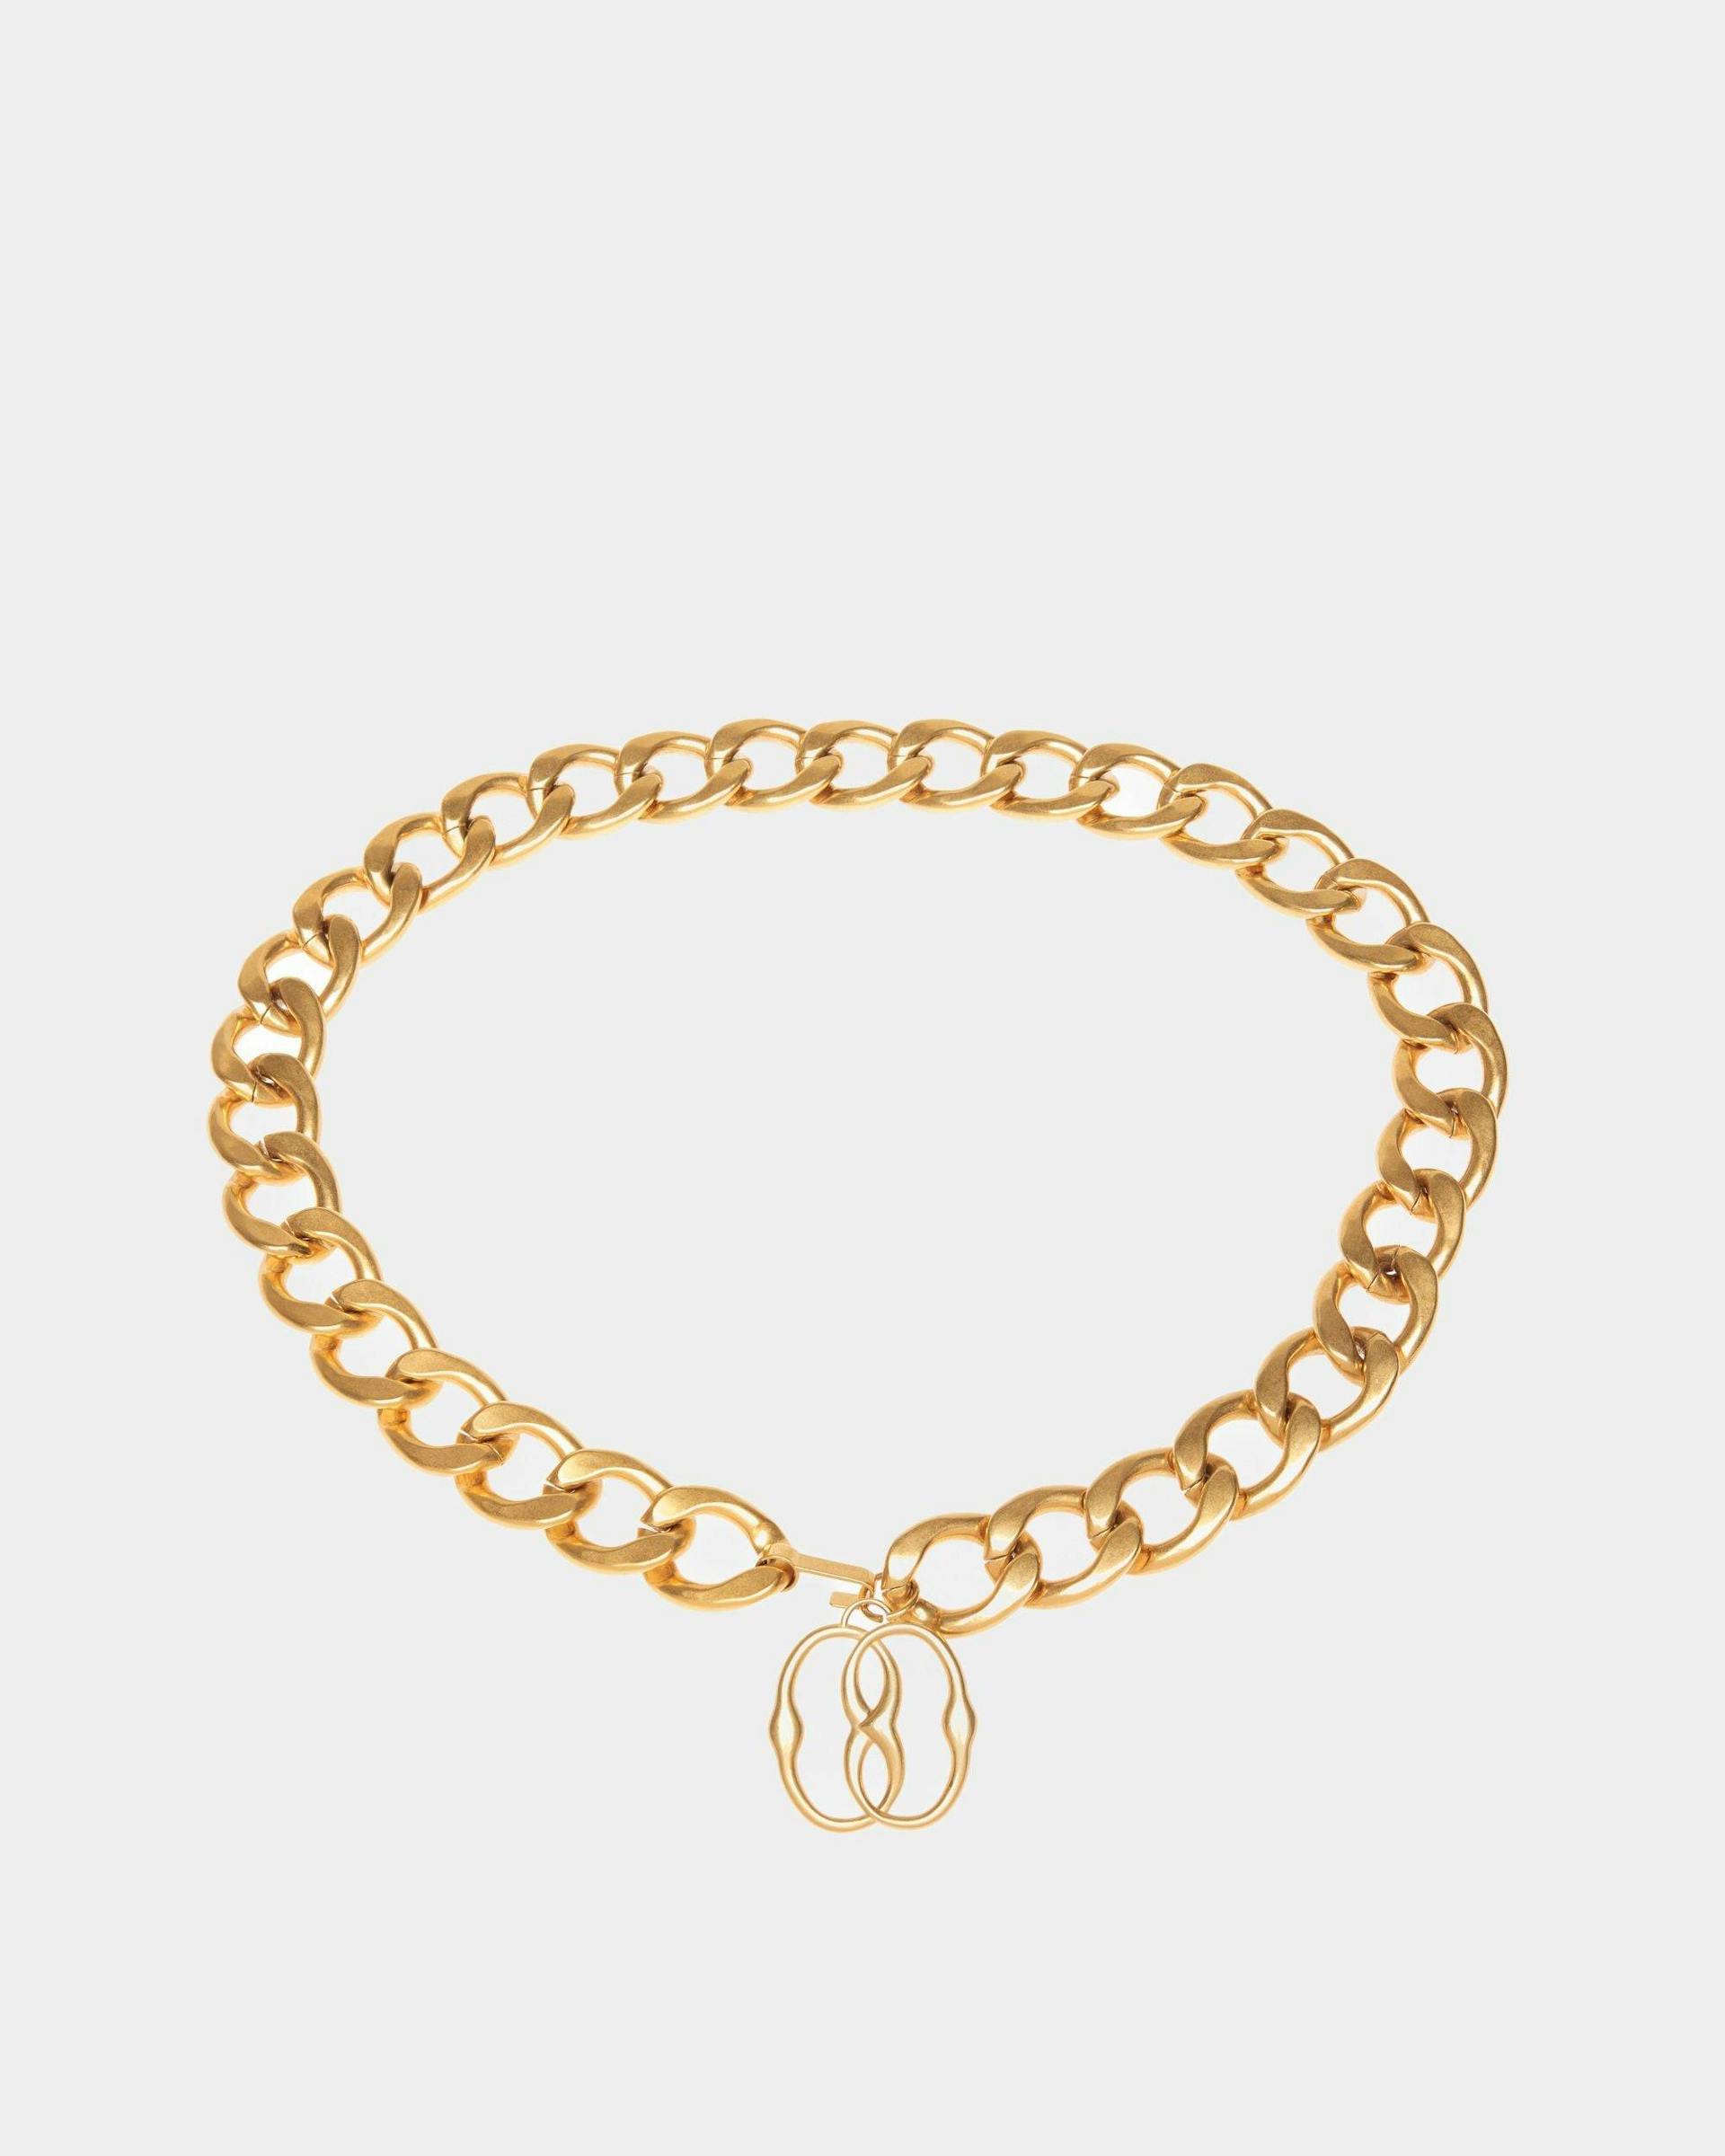 Emblem Chain Belt In Gold Brass - Women's - Bally - 01